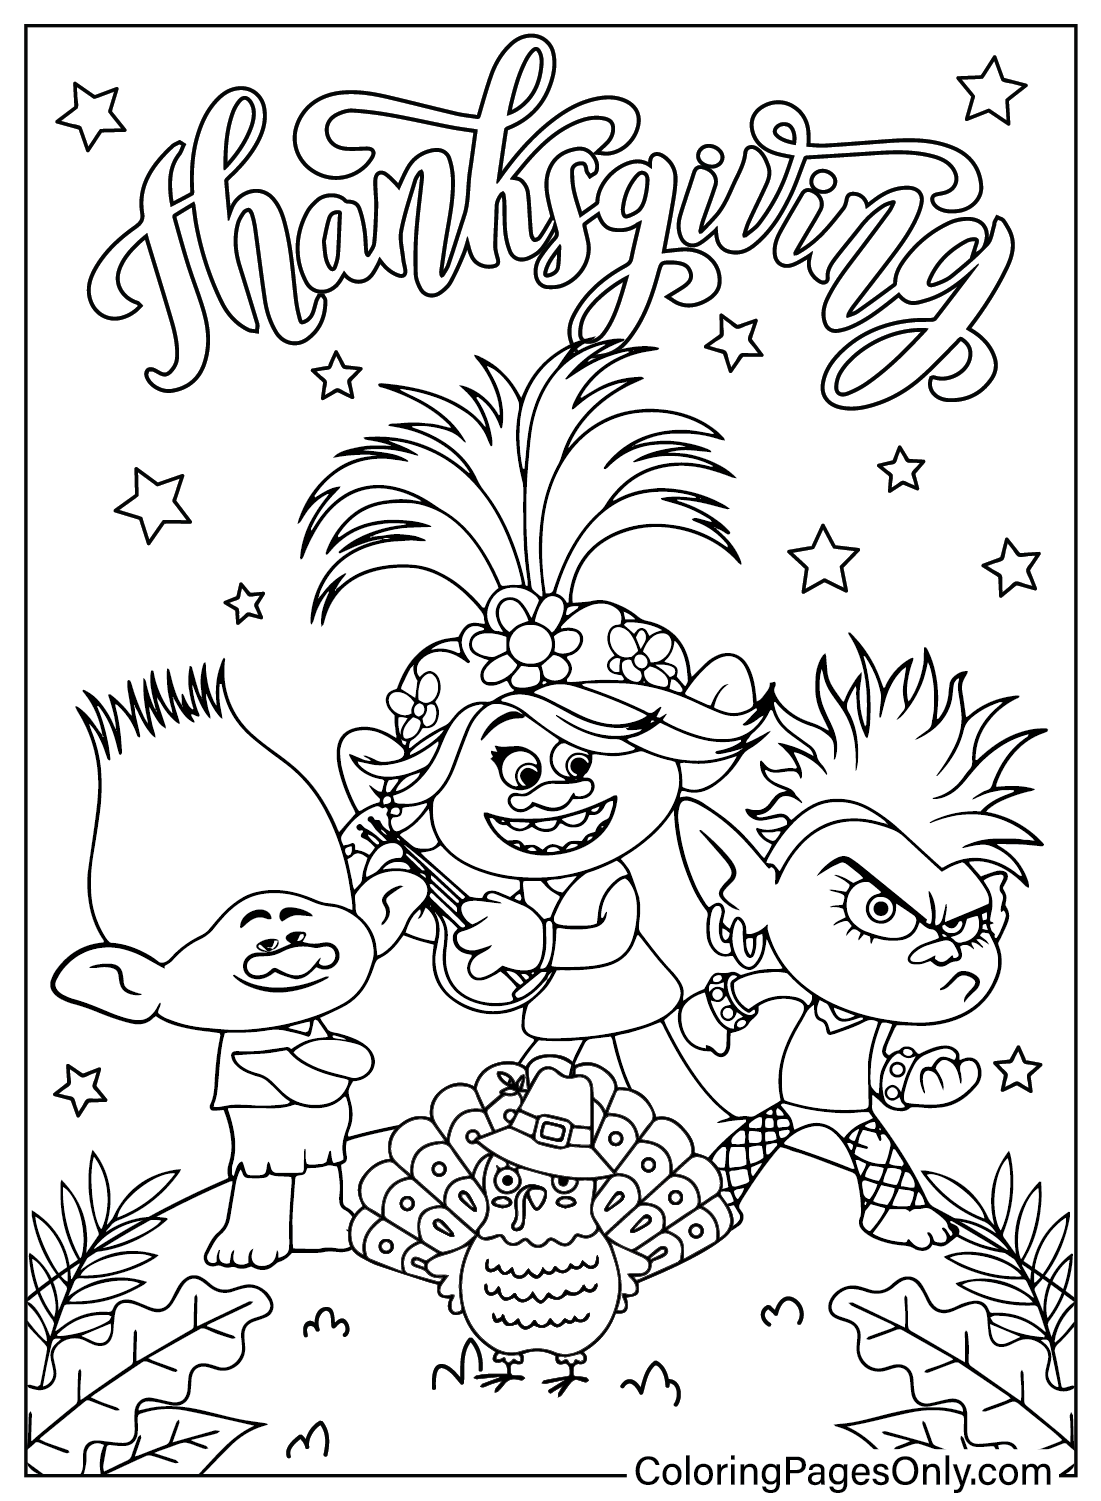 Página para colorear de Trolls de Acción de Gracias de dibujos animados de Acción de Gracias